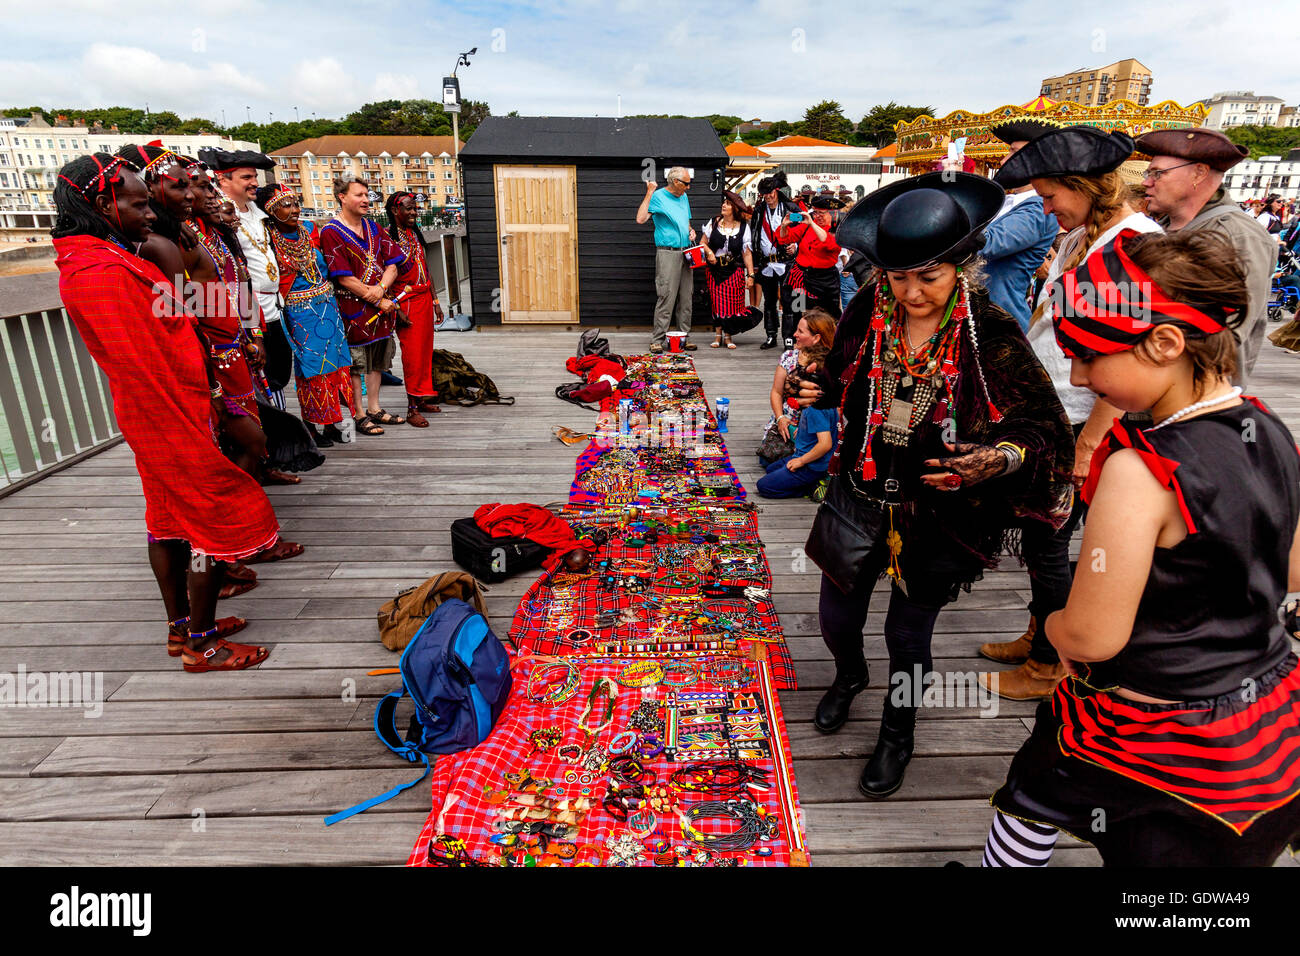 Les peuples africains en costume traditionnel vendant de l'artisanat sur Hastings Pier Au cours de la Pirate Day Festival, Hastings, Royaume-Uni Banque D'Images